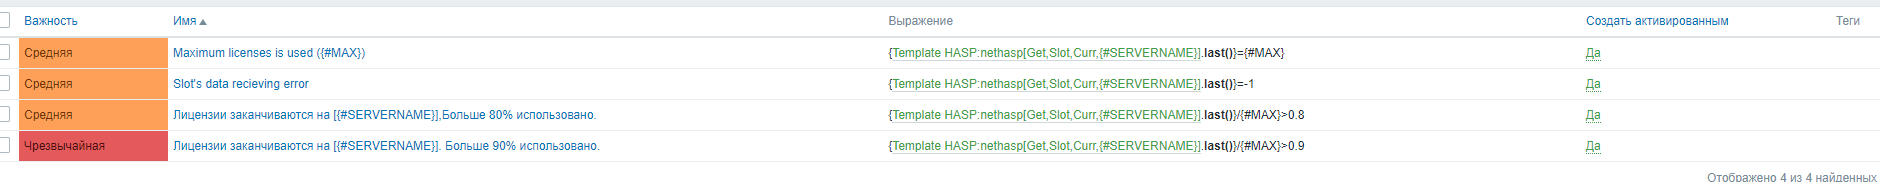 Как мониторить ключи hasp на сервере 1с. Мониторим с помощью zabbix hasp ключи.